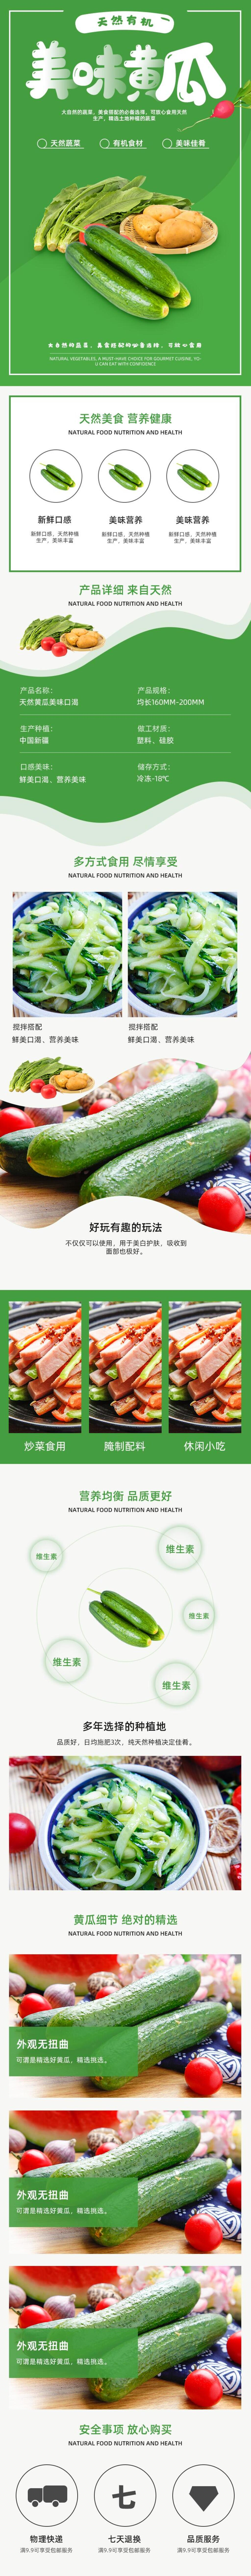 黄瓜banner图图片